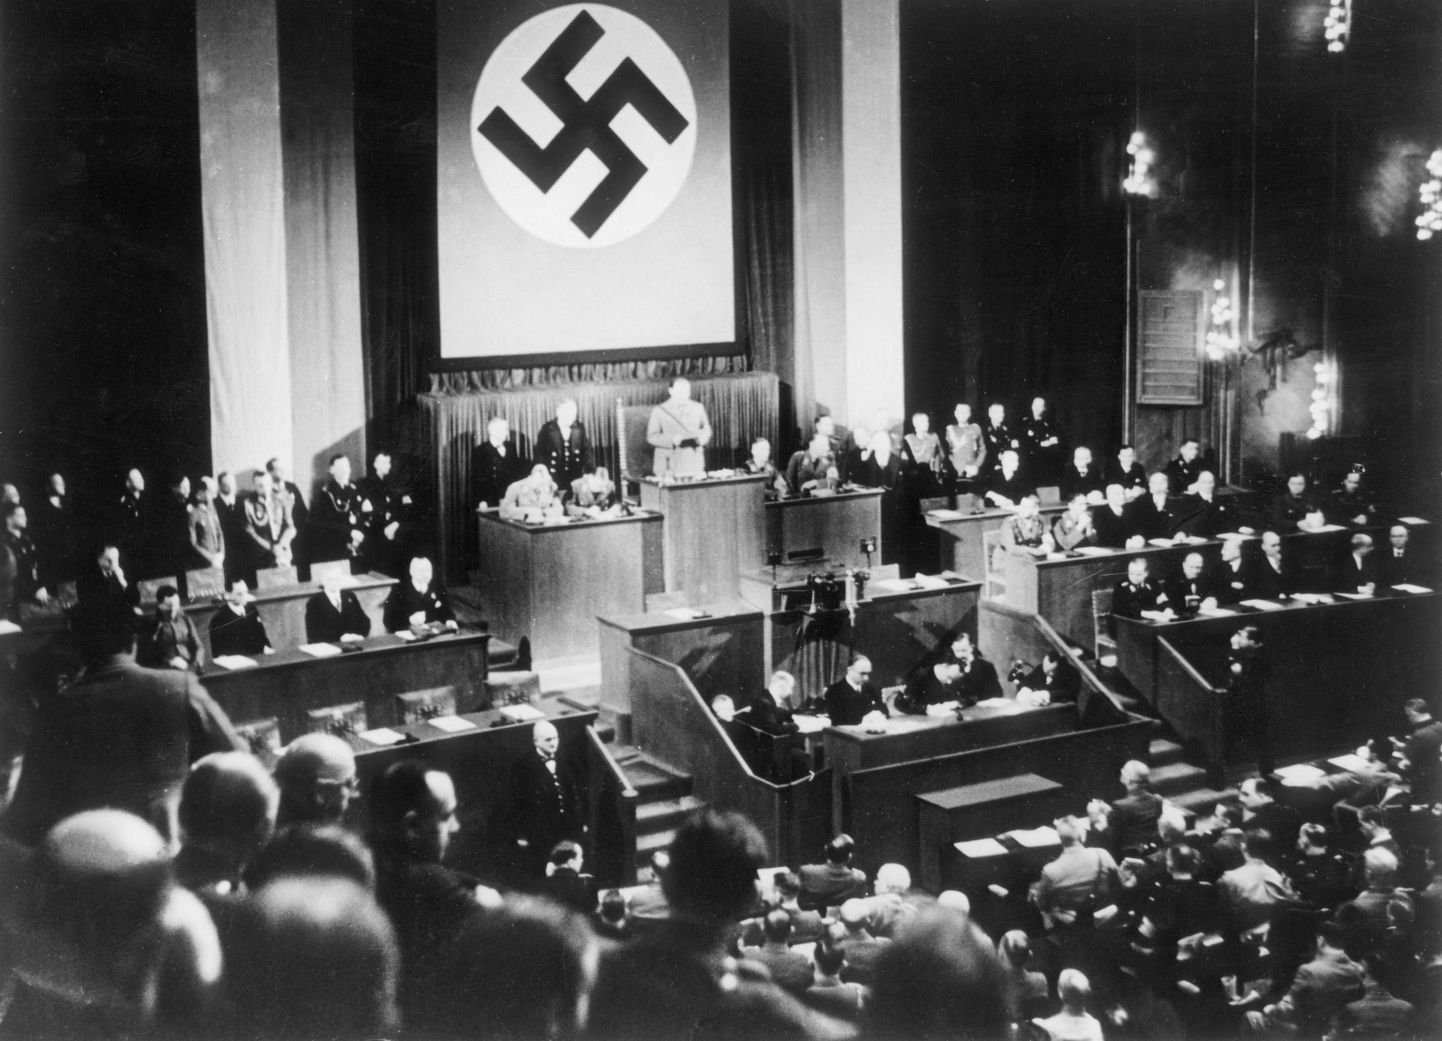 Riigipäeva president Hermann Göring avab pärast riigipäeva hoone põlengut 21. märtsil 1933 Krolli ooperimajas istungjärgu. Kaks päeva hiljem saab Hitler samas saalis diktaatorivolitused. Ehkki Saksamaa ei olnud tol hetkel veel täiesti natside võimu all, oli riigipäeva saal kaunistatud suure haakristiga.

 